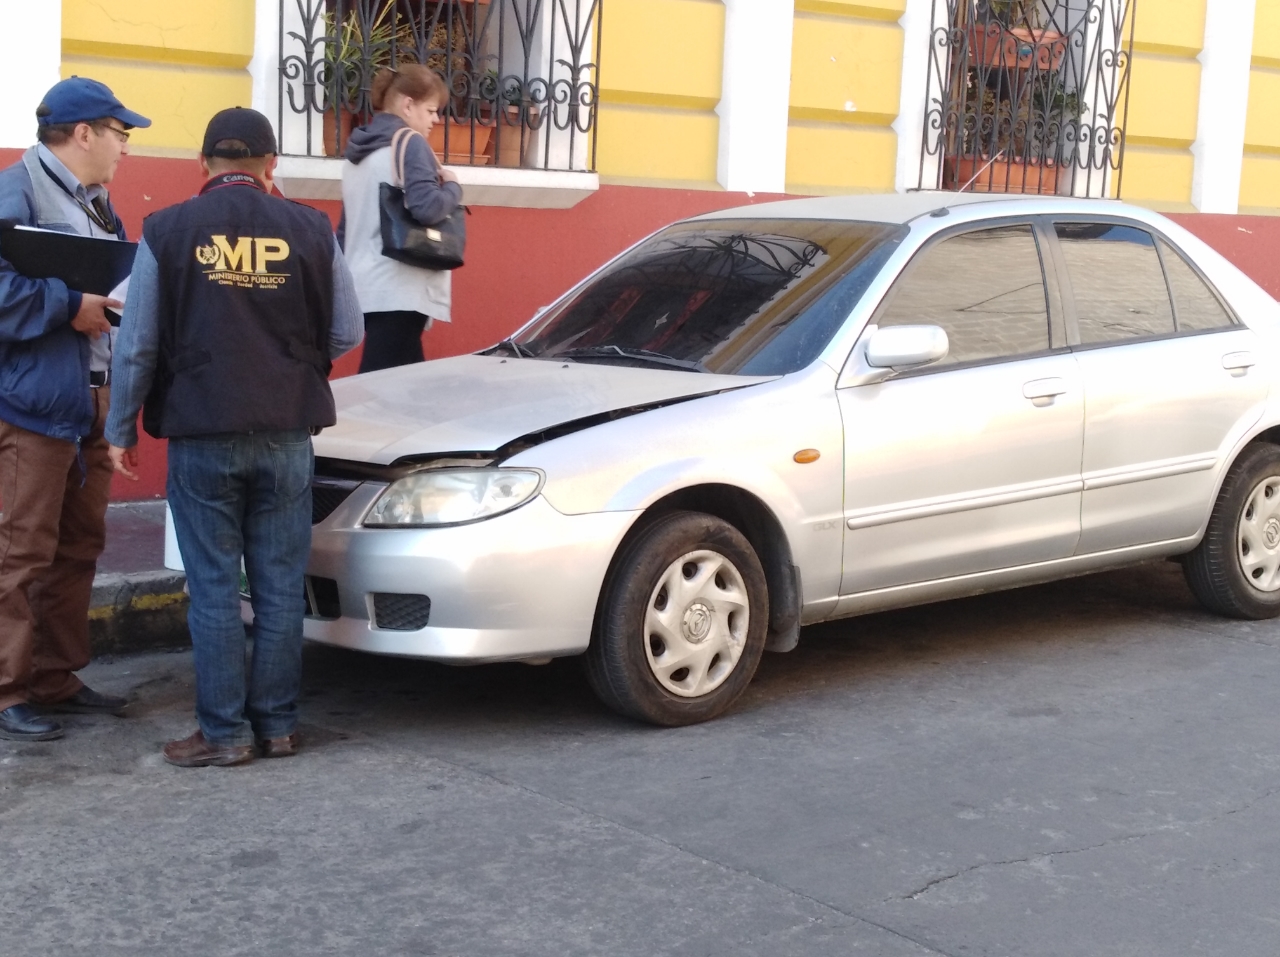 Investigadores del MP llegaron al lugar donde ocurrió el robo para recabar evidencias. (Foto Prensa Libre: cortesía) 